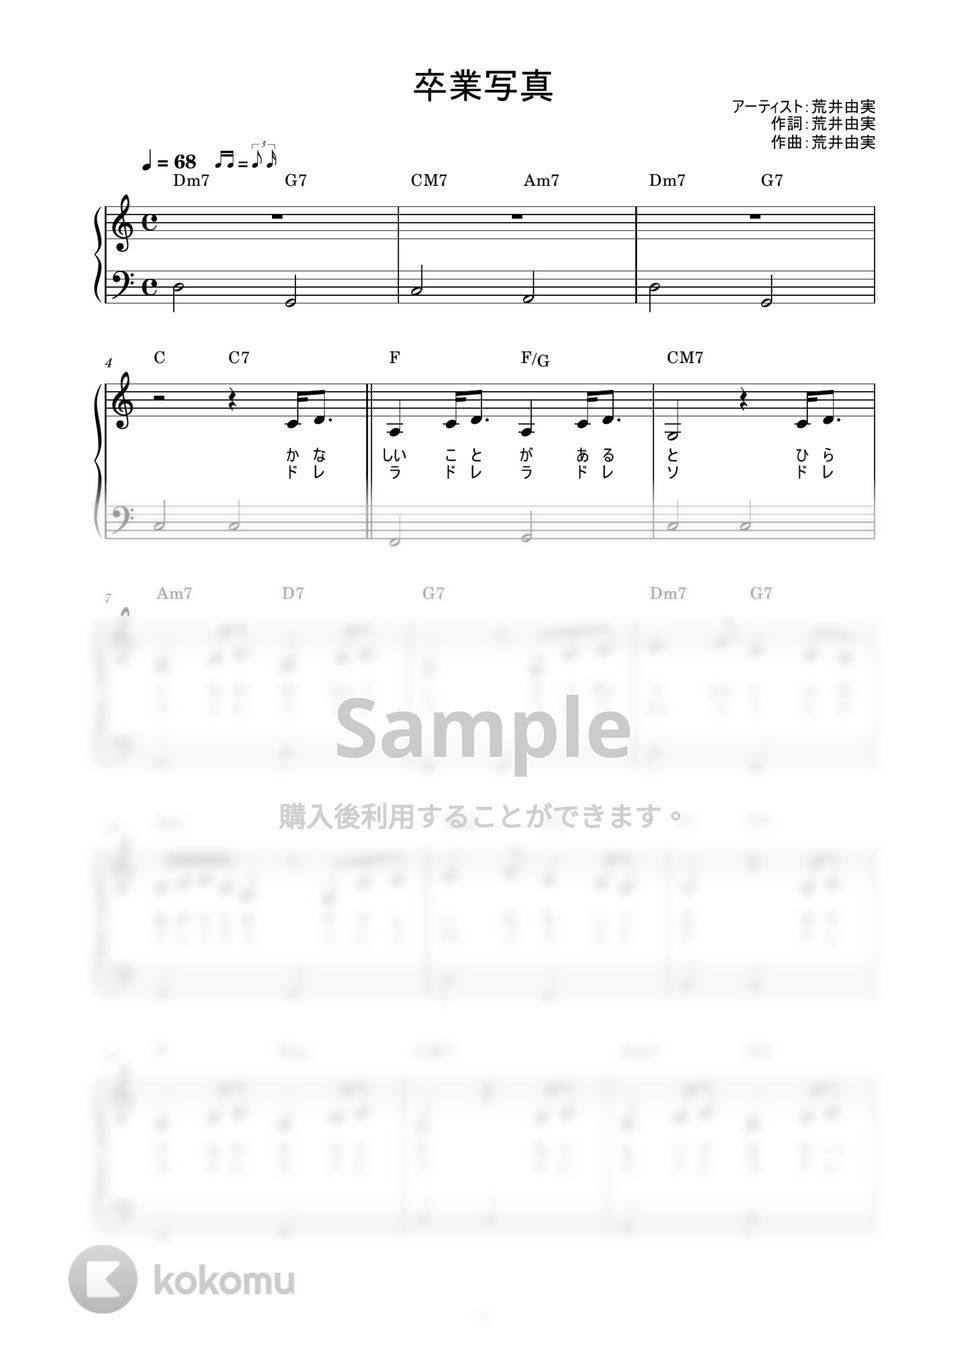 荒井由実 - 卒業写真 (かんたん / 歌詞付き / ドレミ付き / 初心者) by piano.tokyo